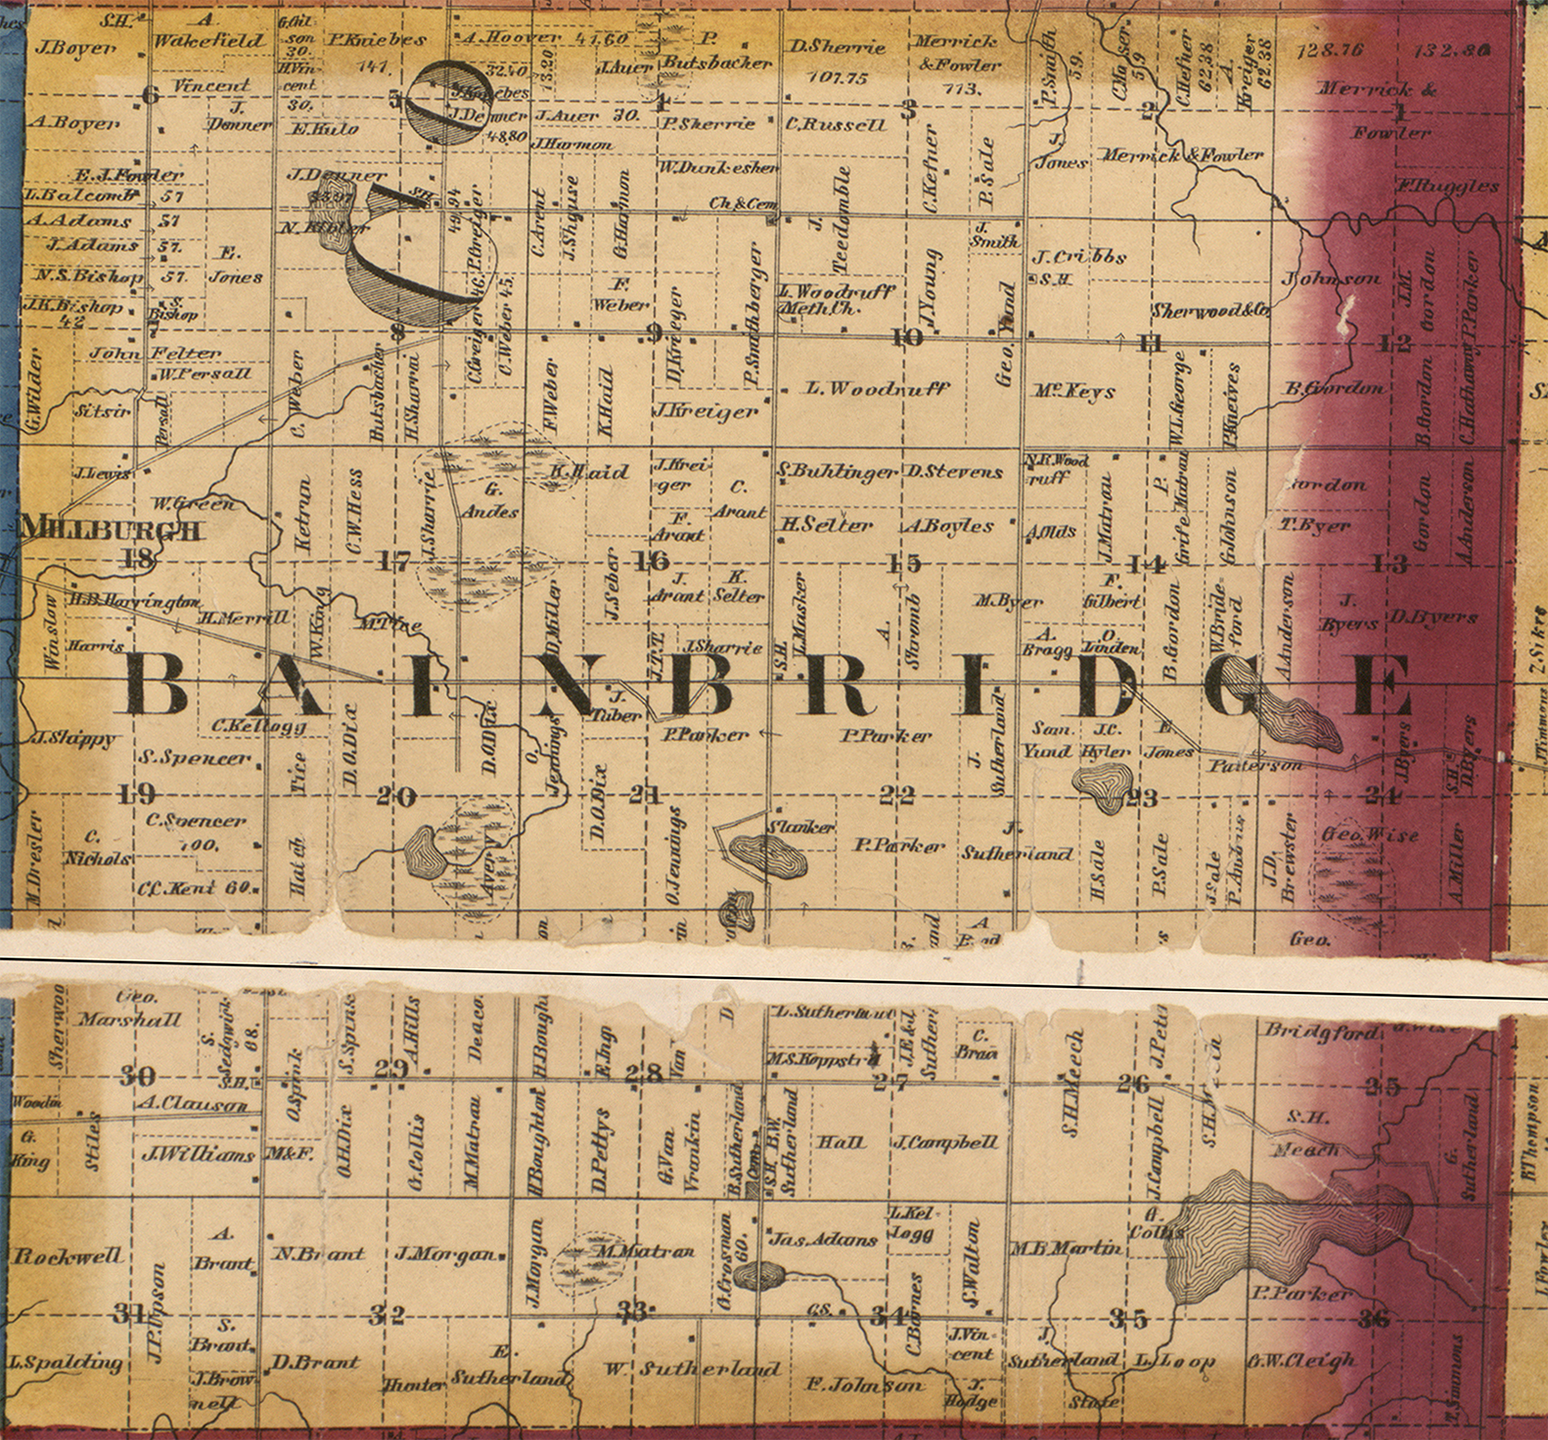 1860 Bainbridge Township, Michigan landownership map